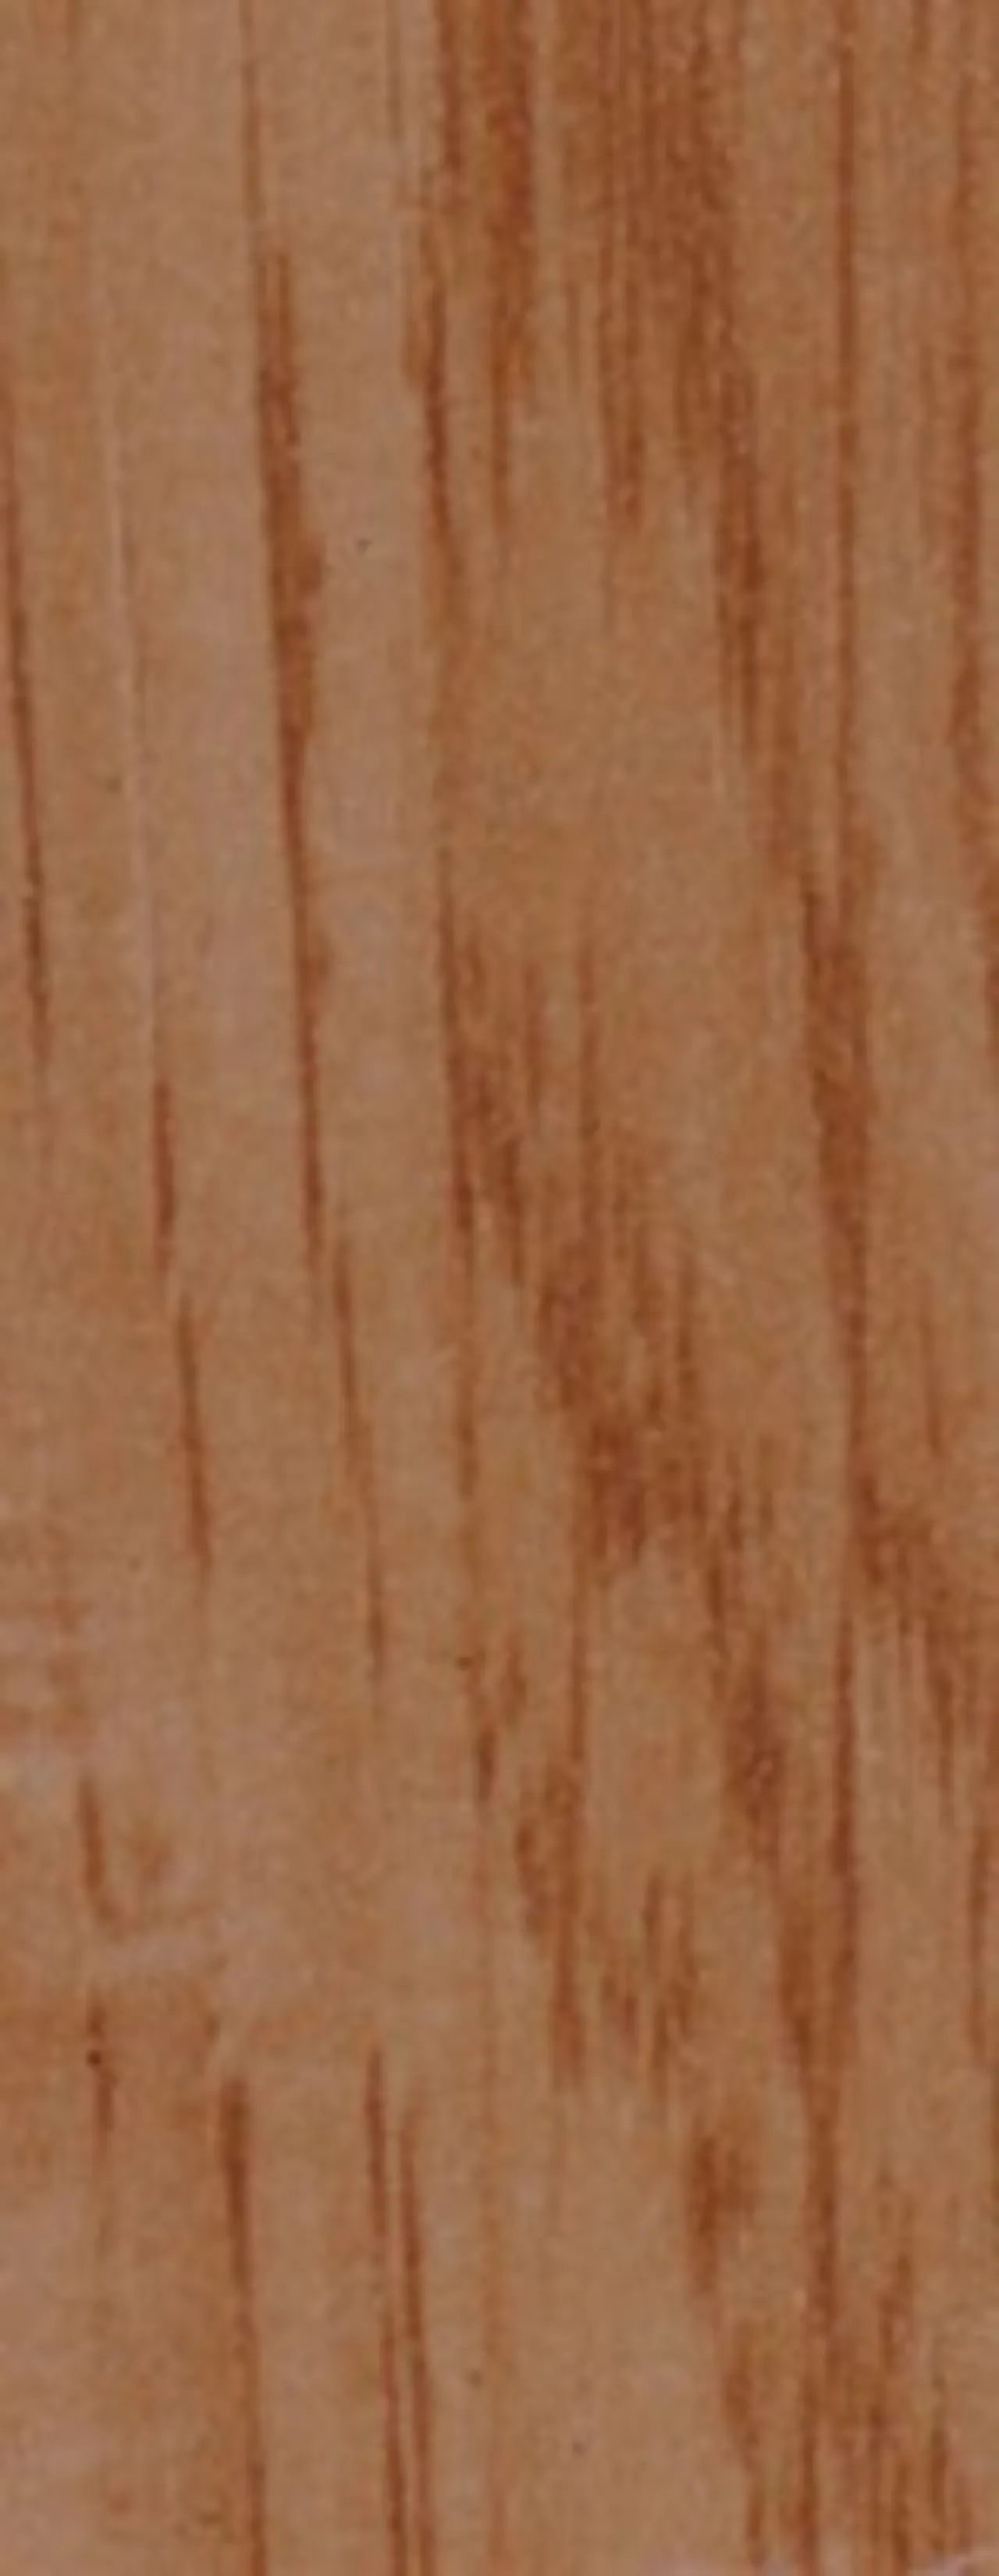 Ilegg duriwood 200cm mørk eik ilegg til duriwood lister